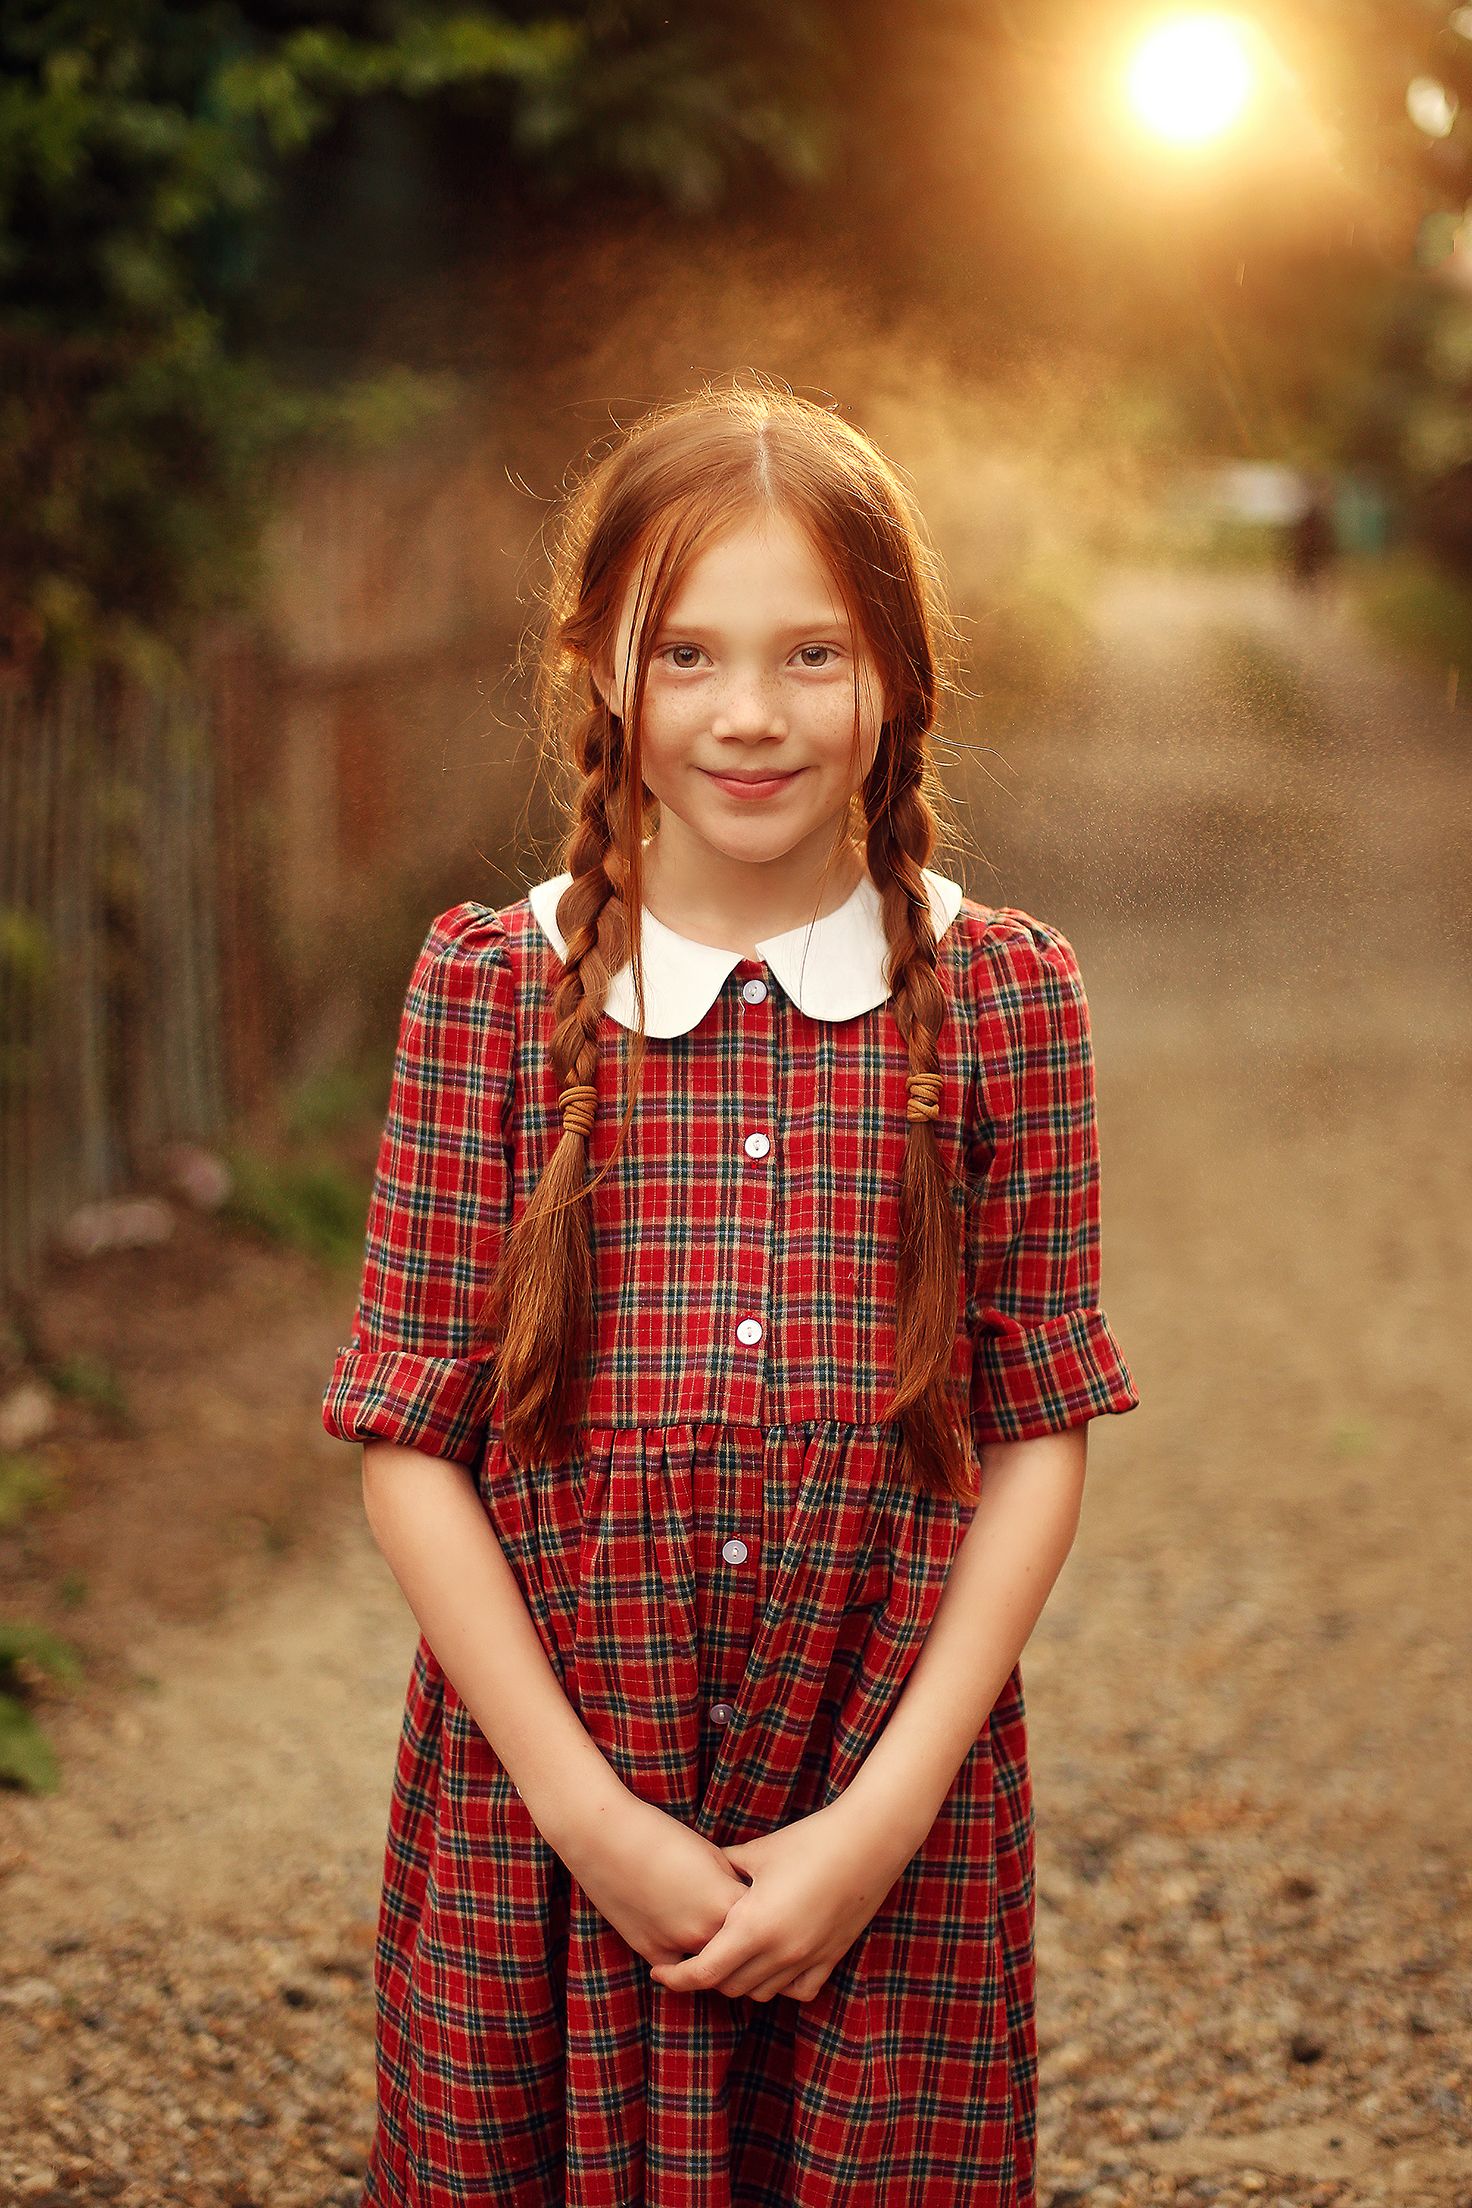 детский портрет, рыжая девочка, фотофонарь, винтаж, Былич Влада